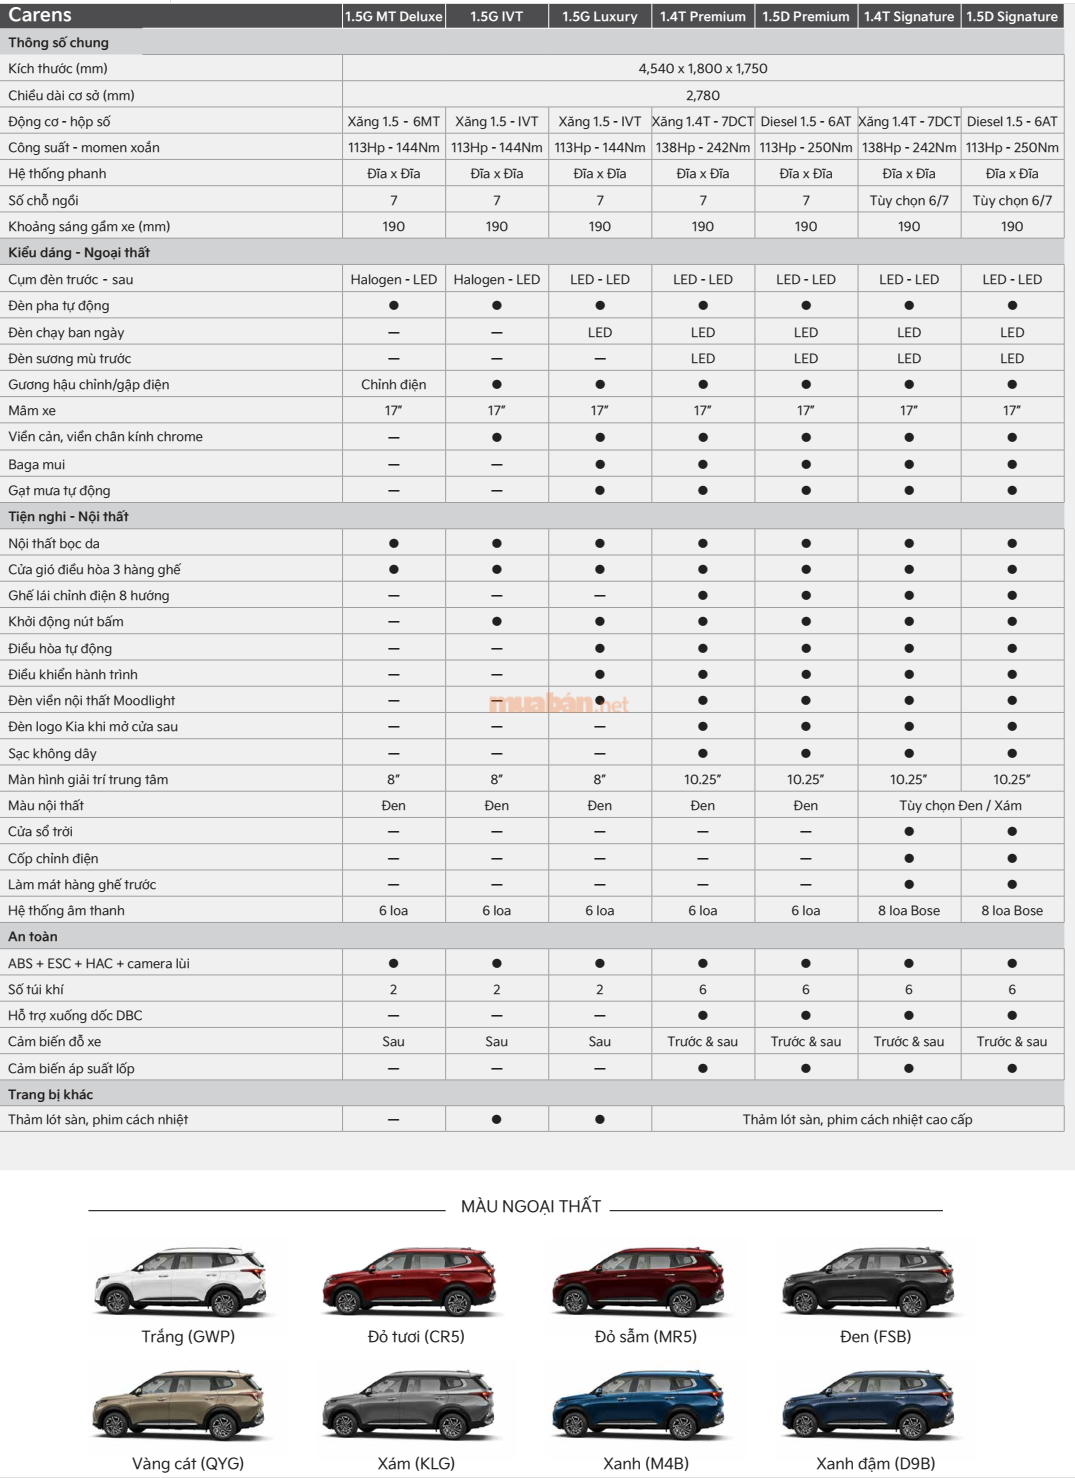 Bảng thông số kỹ thuật xe Kia Carens